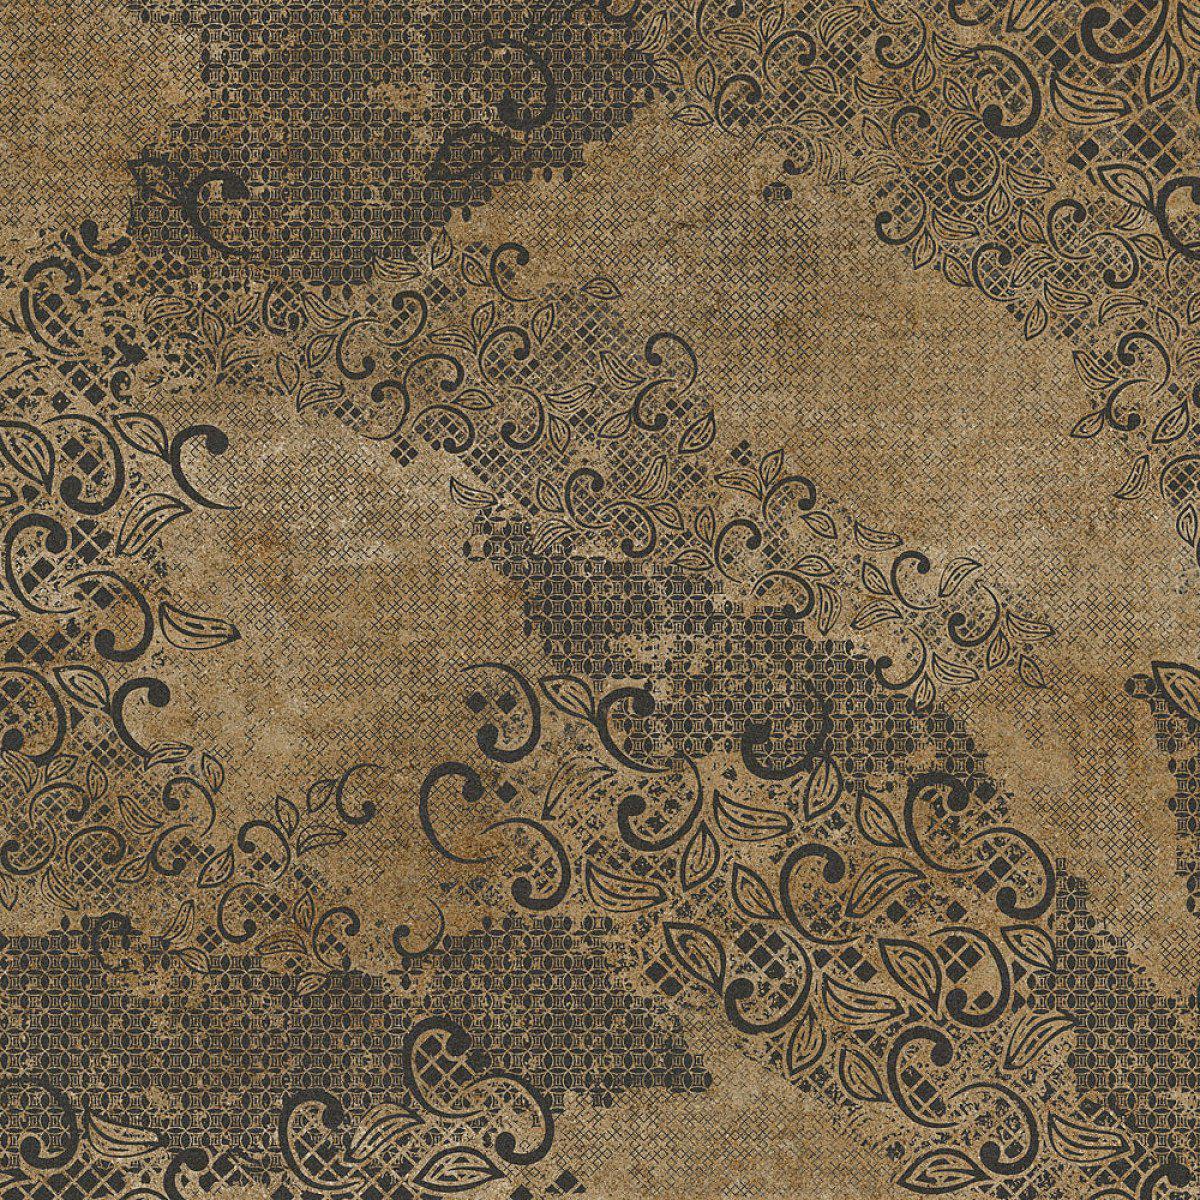 Starling-Digital Wallpaper-Tecnografica-Brown 3-62586-4